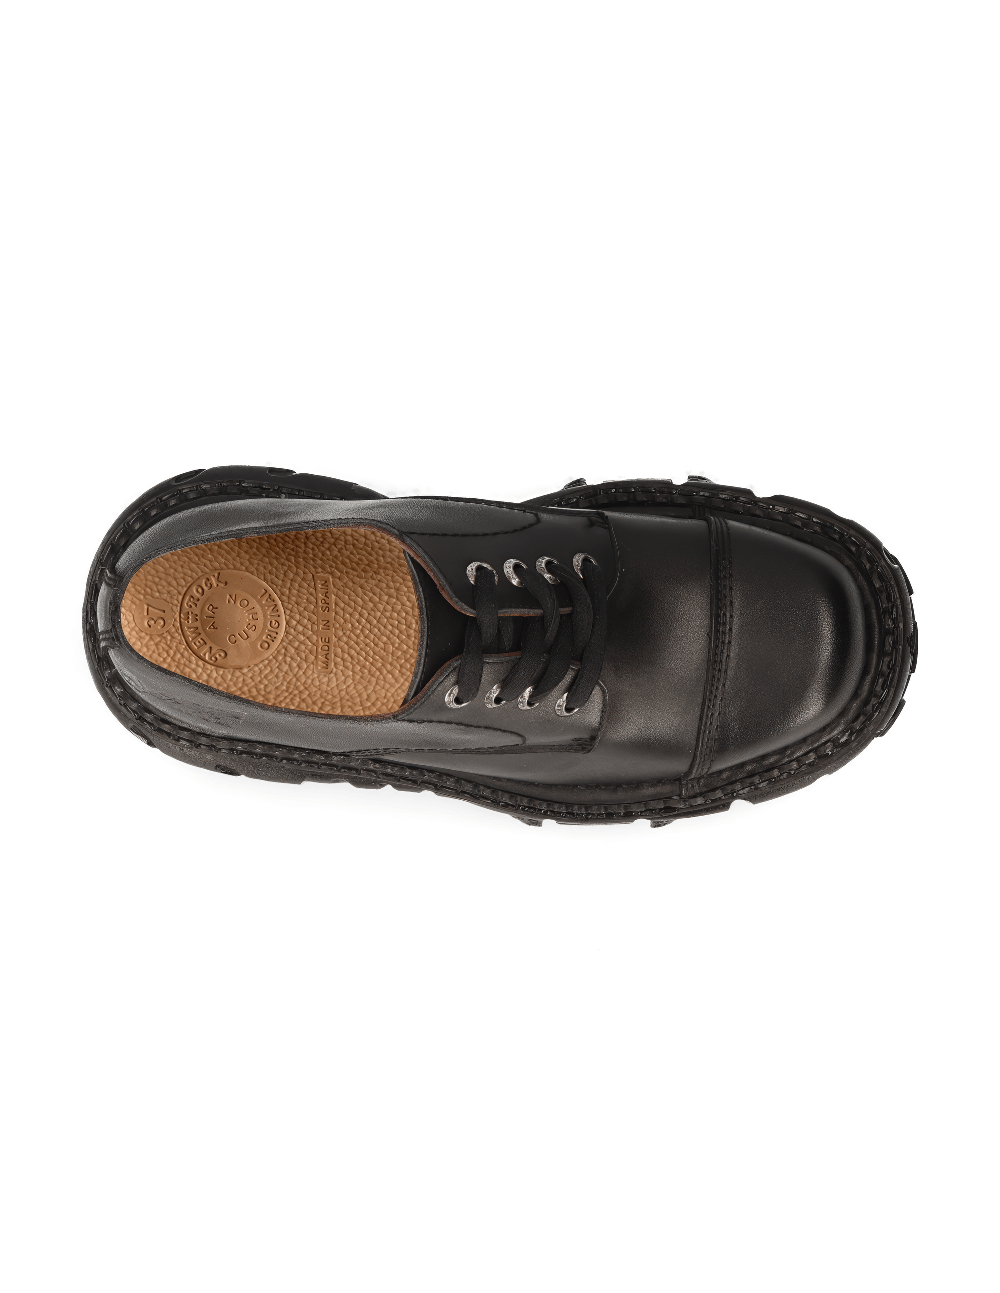 NEW ROCK Unisex Rugged Black Platform Ankle Shoes